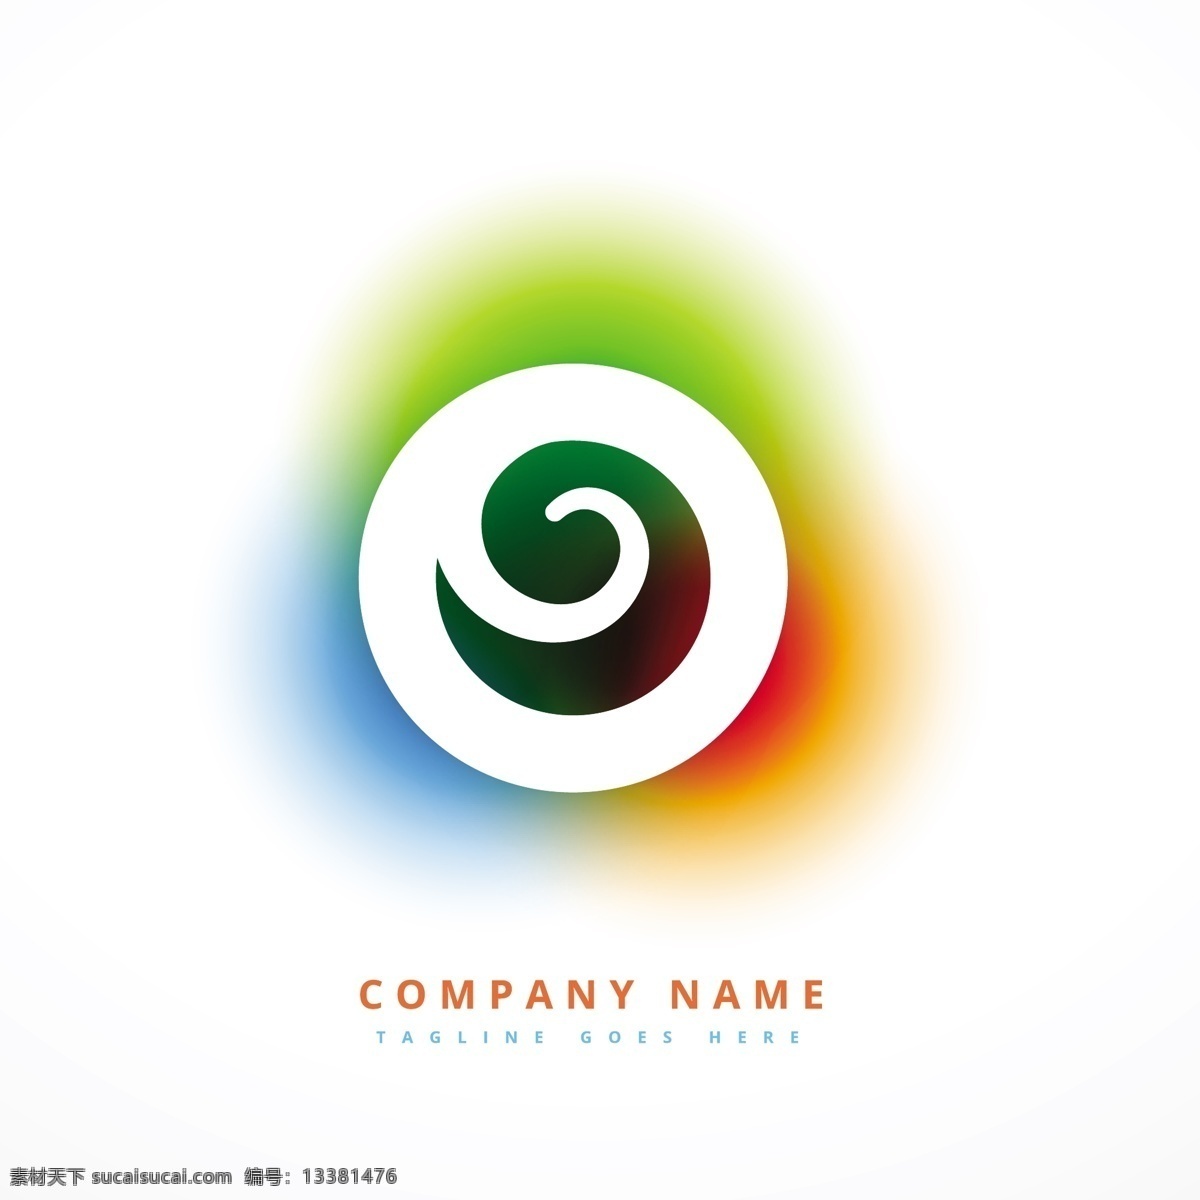 彩色 漩涡 标志 标识 商业 抽象 图标 模板 标志设计 营销 颜色 促销 广告 企业 丰富多彩 公司 品牌 创意 应用程序 抽象的标志 形状 现代 白色